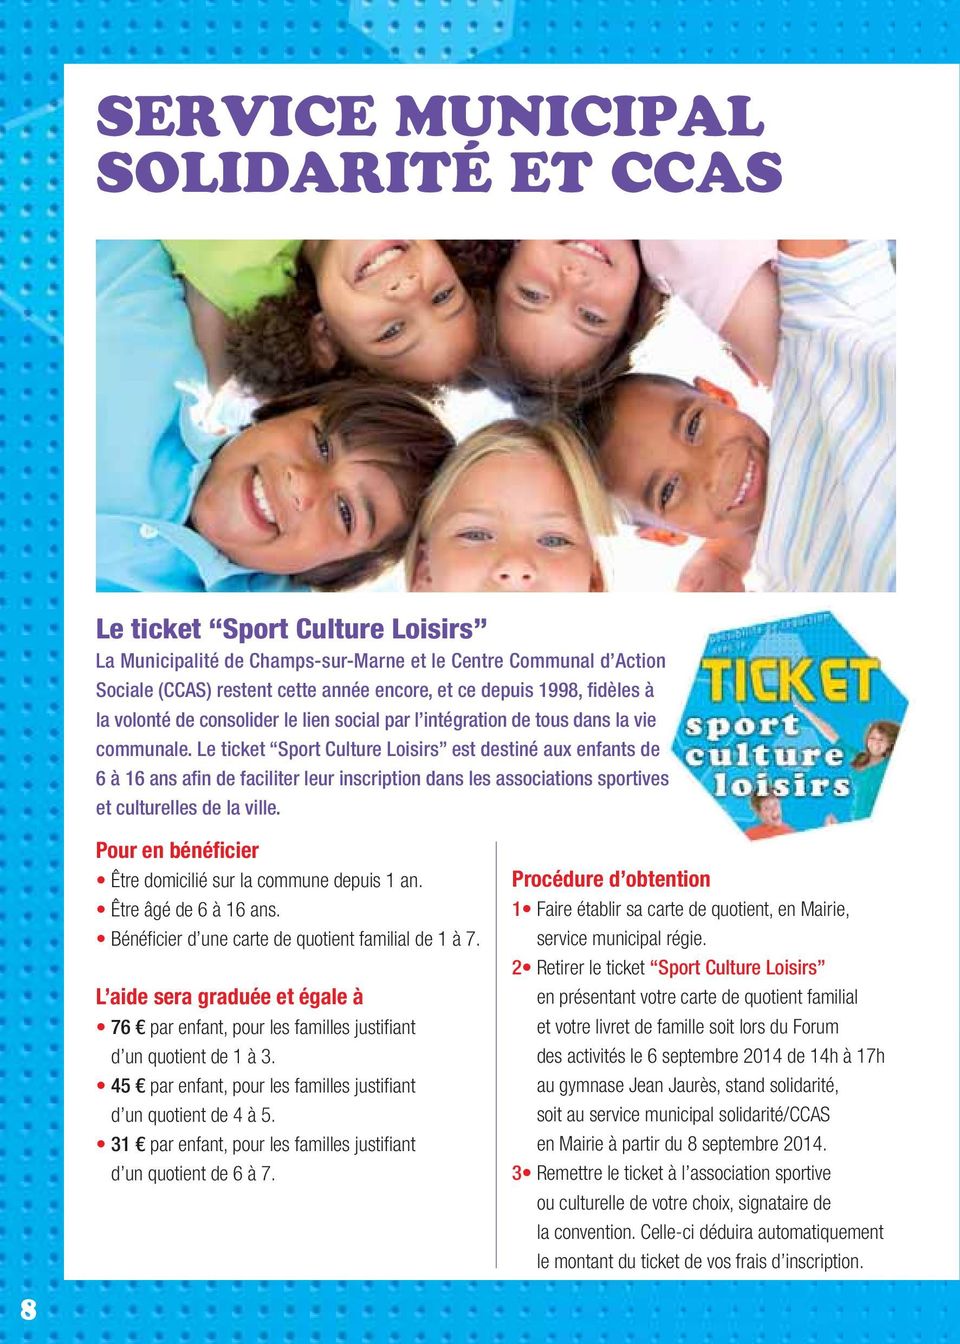 Le ticket Sport Culture Loisirs est destiné aux enfants de 6 à 16 ans afin de faciliter leur inscription dans les associations sportives et culturelles de la ville.